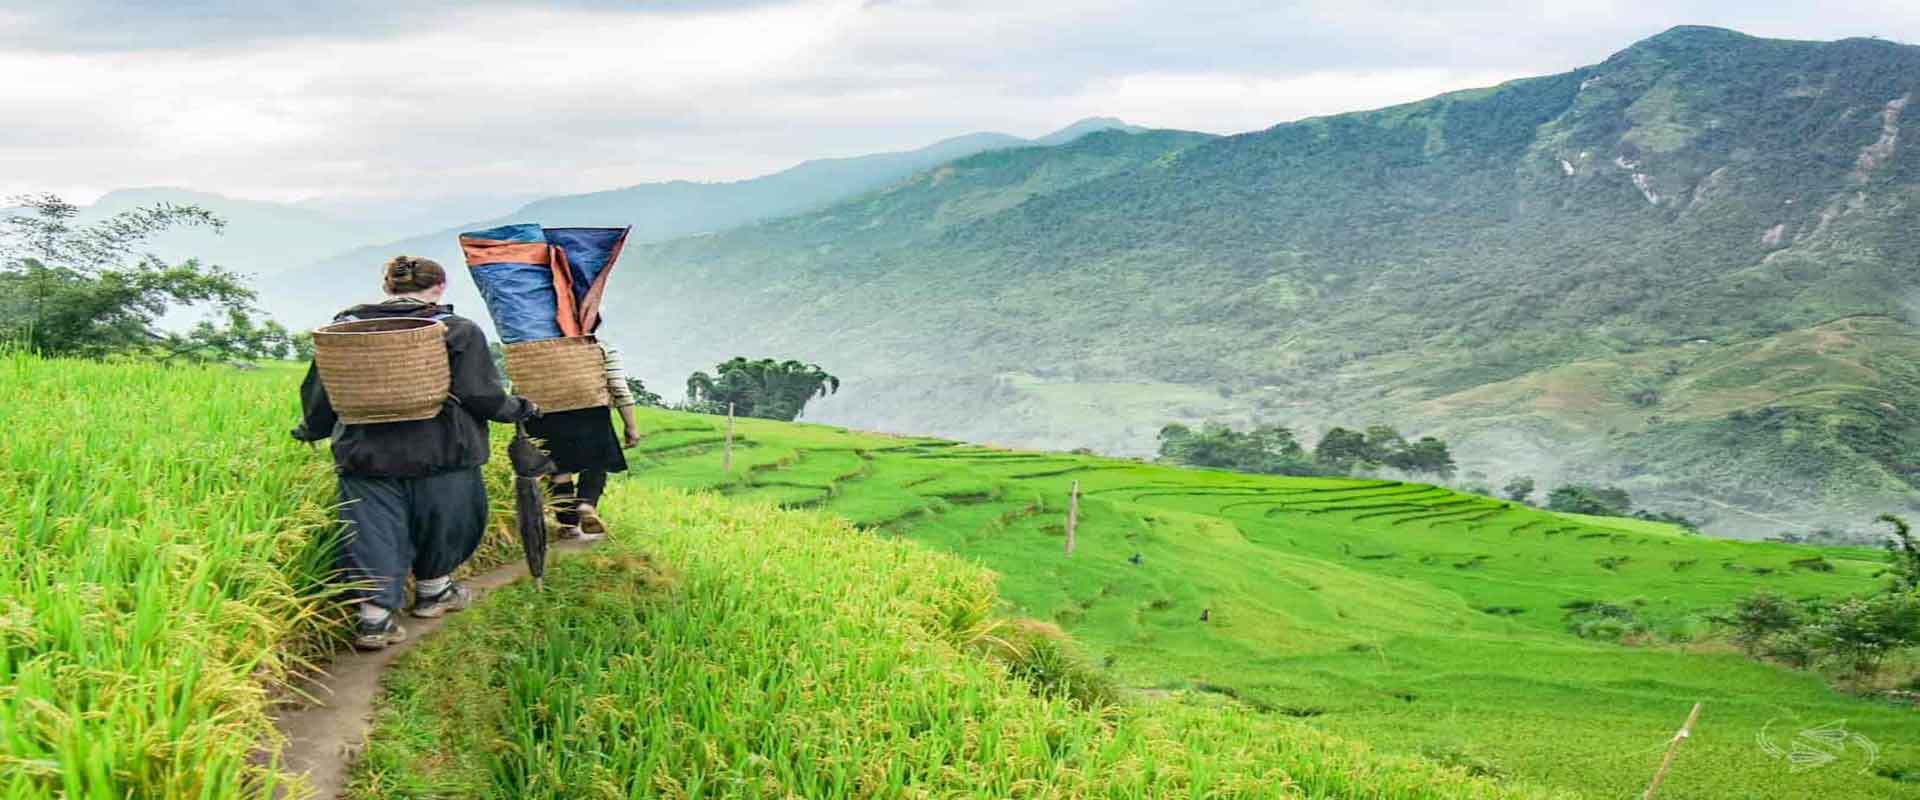 Vietnam Hiking and Trekking Tours: Discover Vietnam’s Hidden Gems